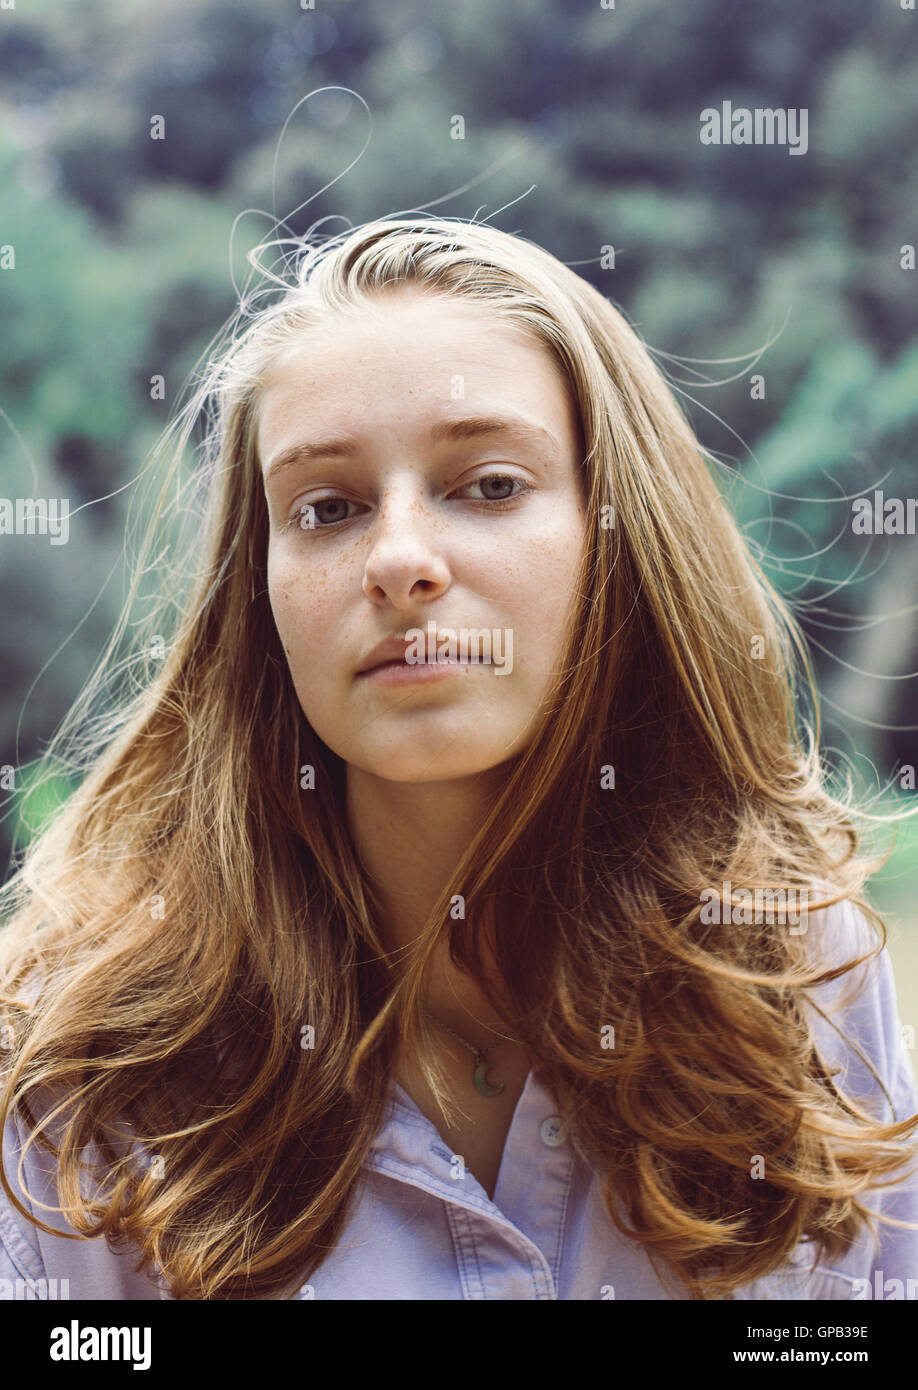 Süße Teenager-Mädchen Porträt mit blonden Haaren, sucht nachdenklich Stockfoto